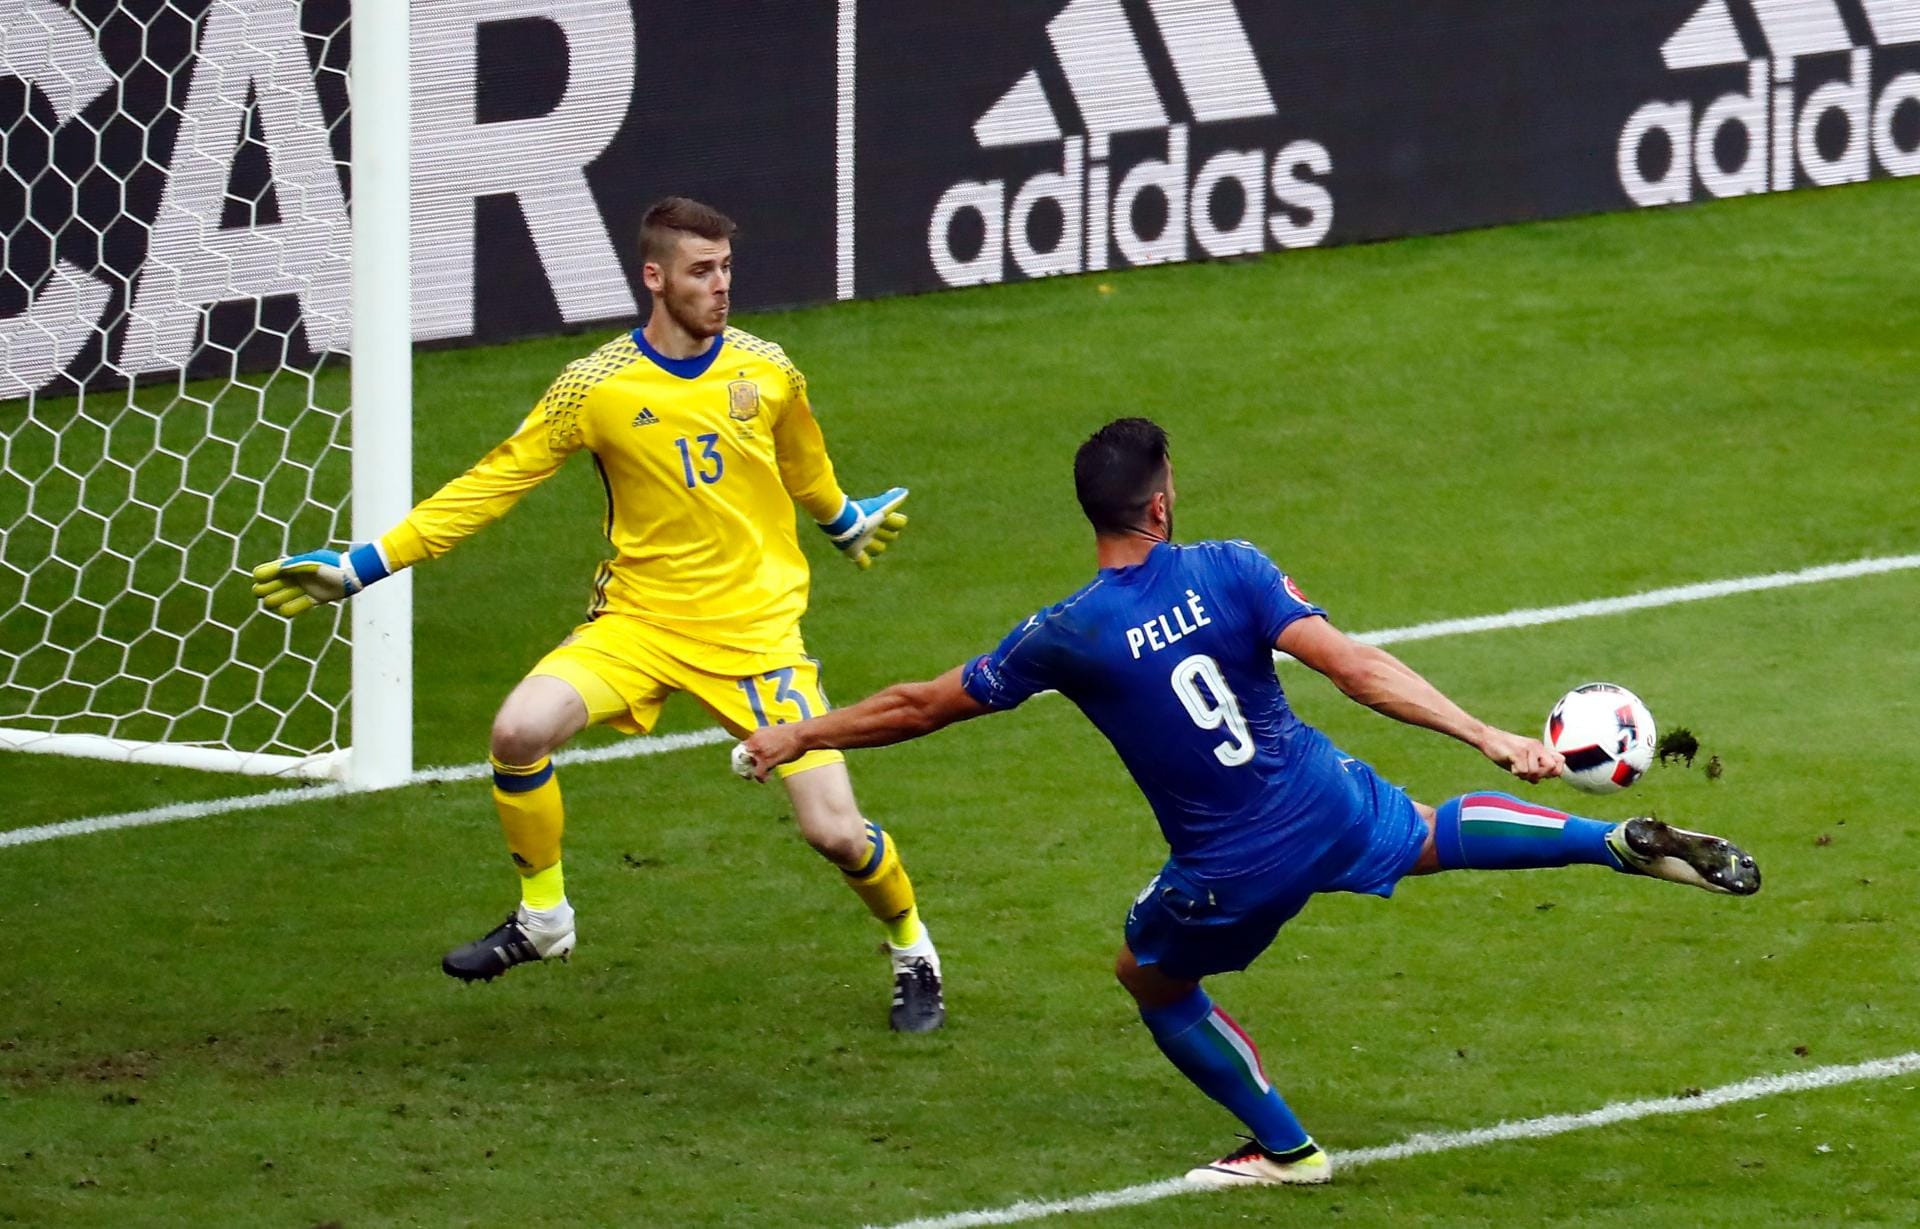 Besser machte es in der ersten Minute der Nachspielzeit Pellè, der Spaniens Aus mit dem 2:0 für Italien endgültig besiegelte...